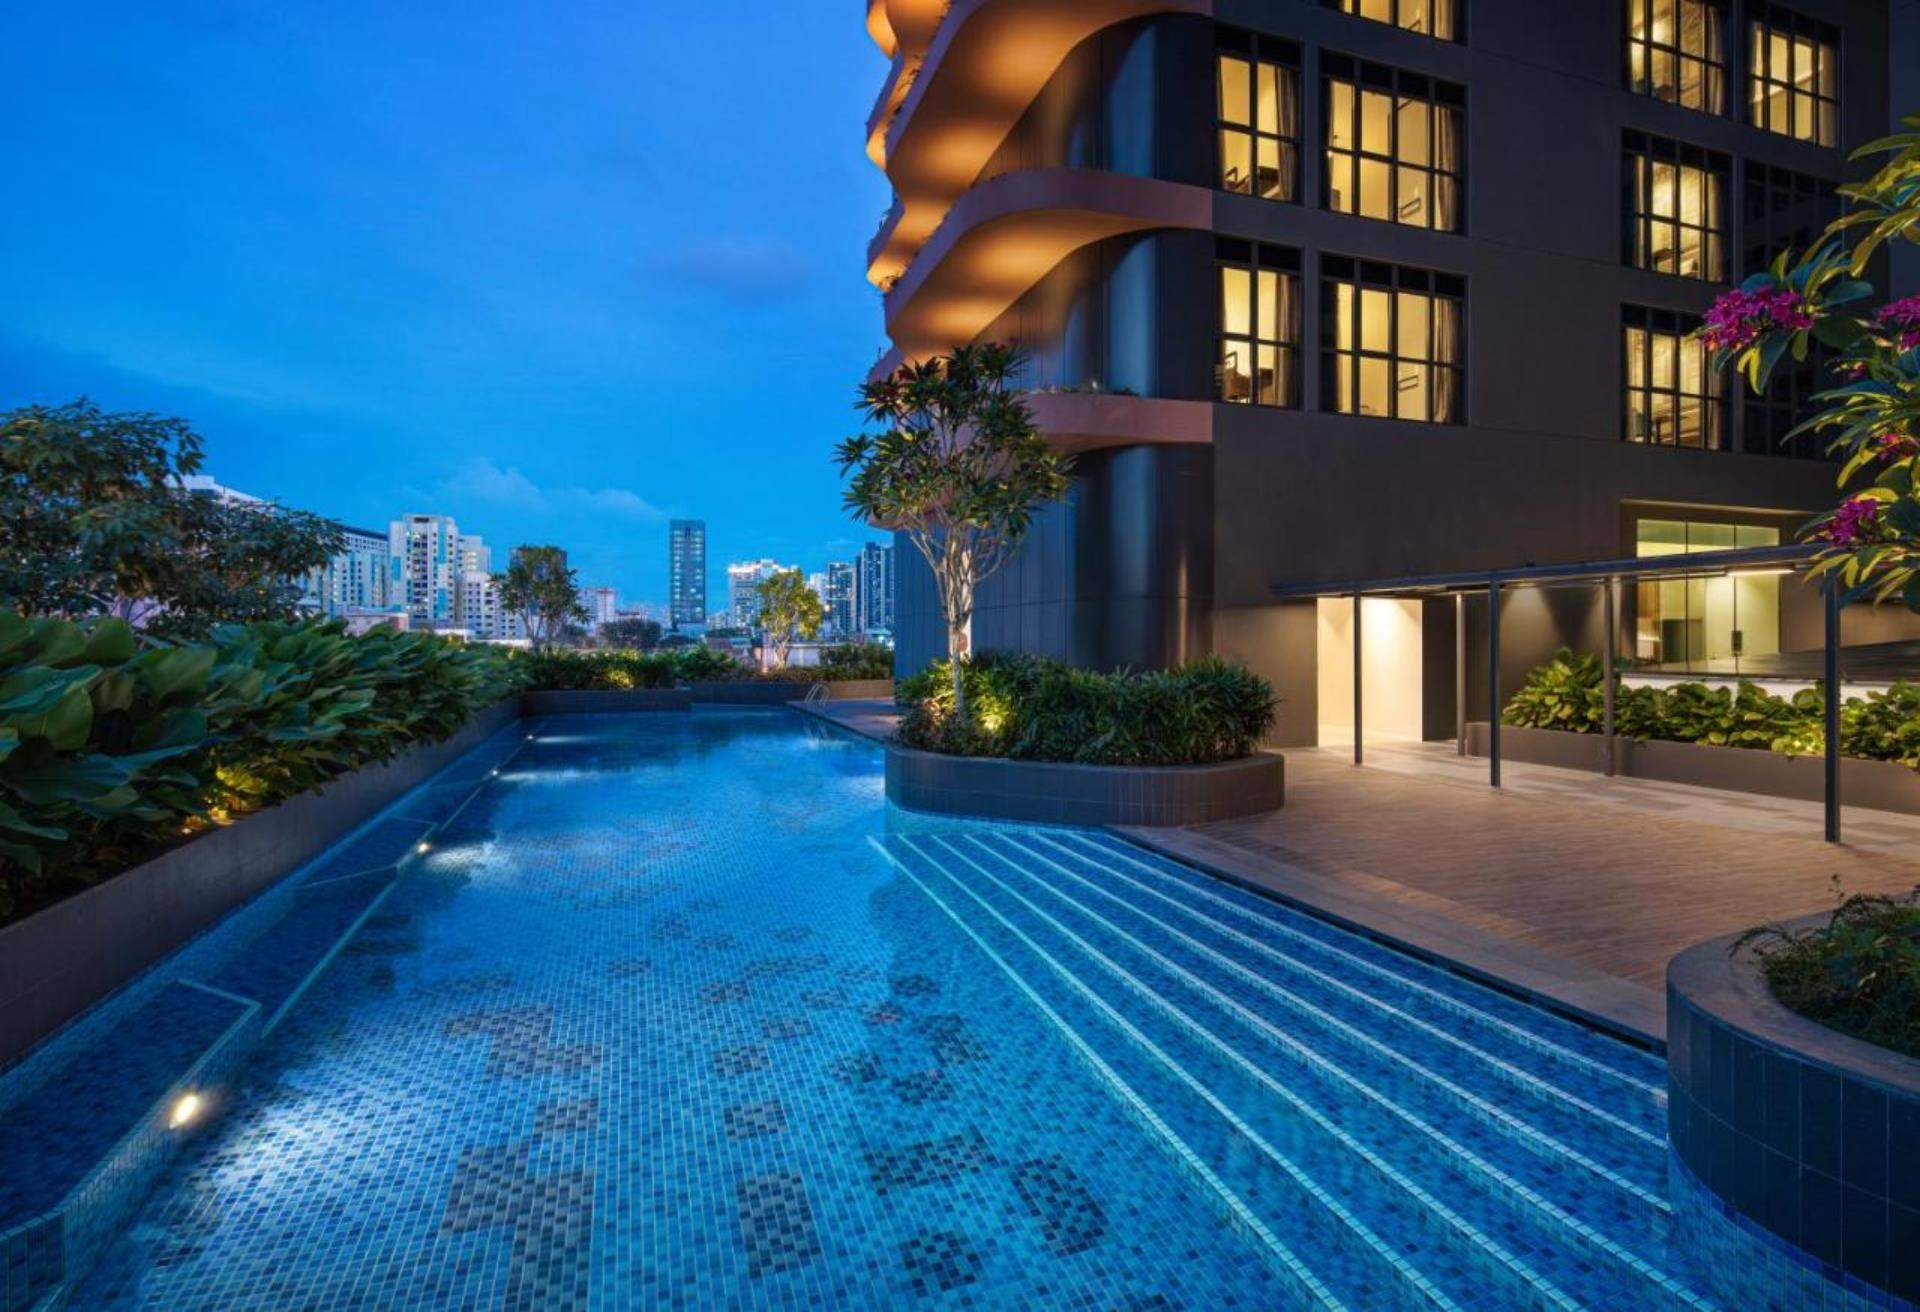 新加坡羅徹馨樂庭酒店,Citadines Rochor Singapore,新加坡酒店推介